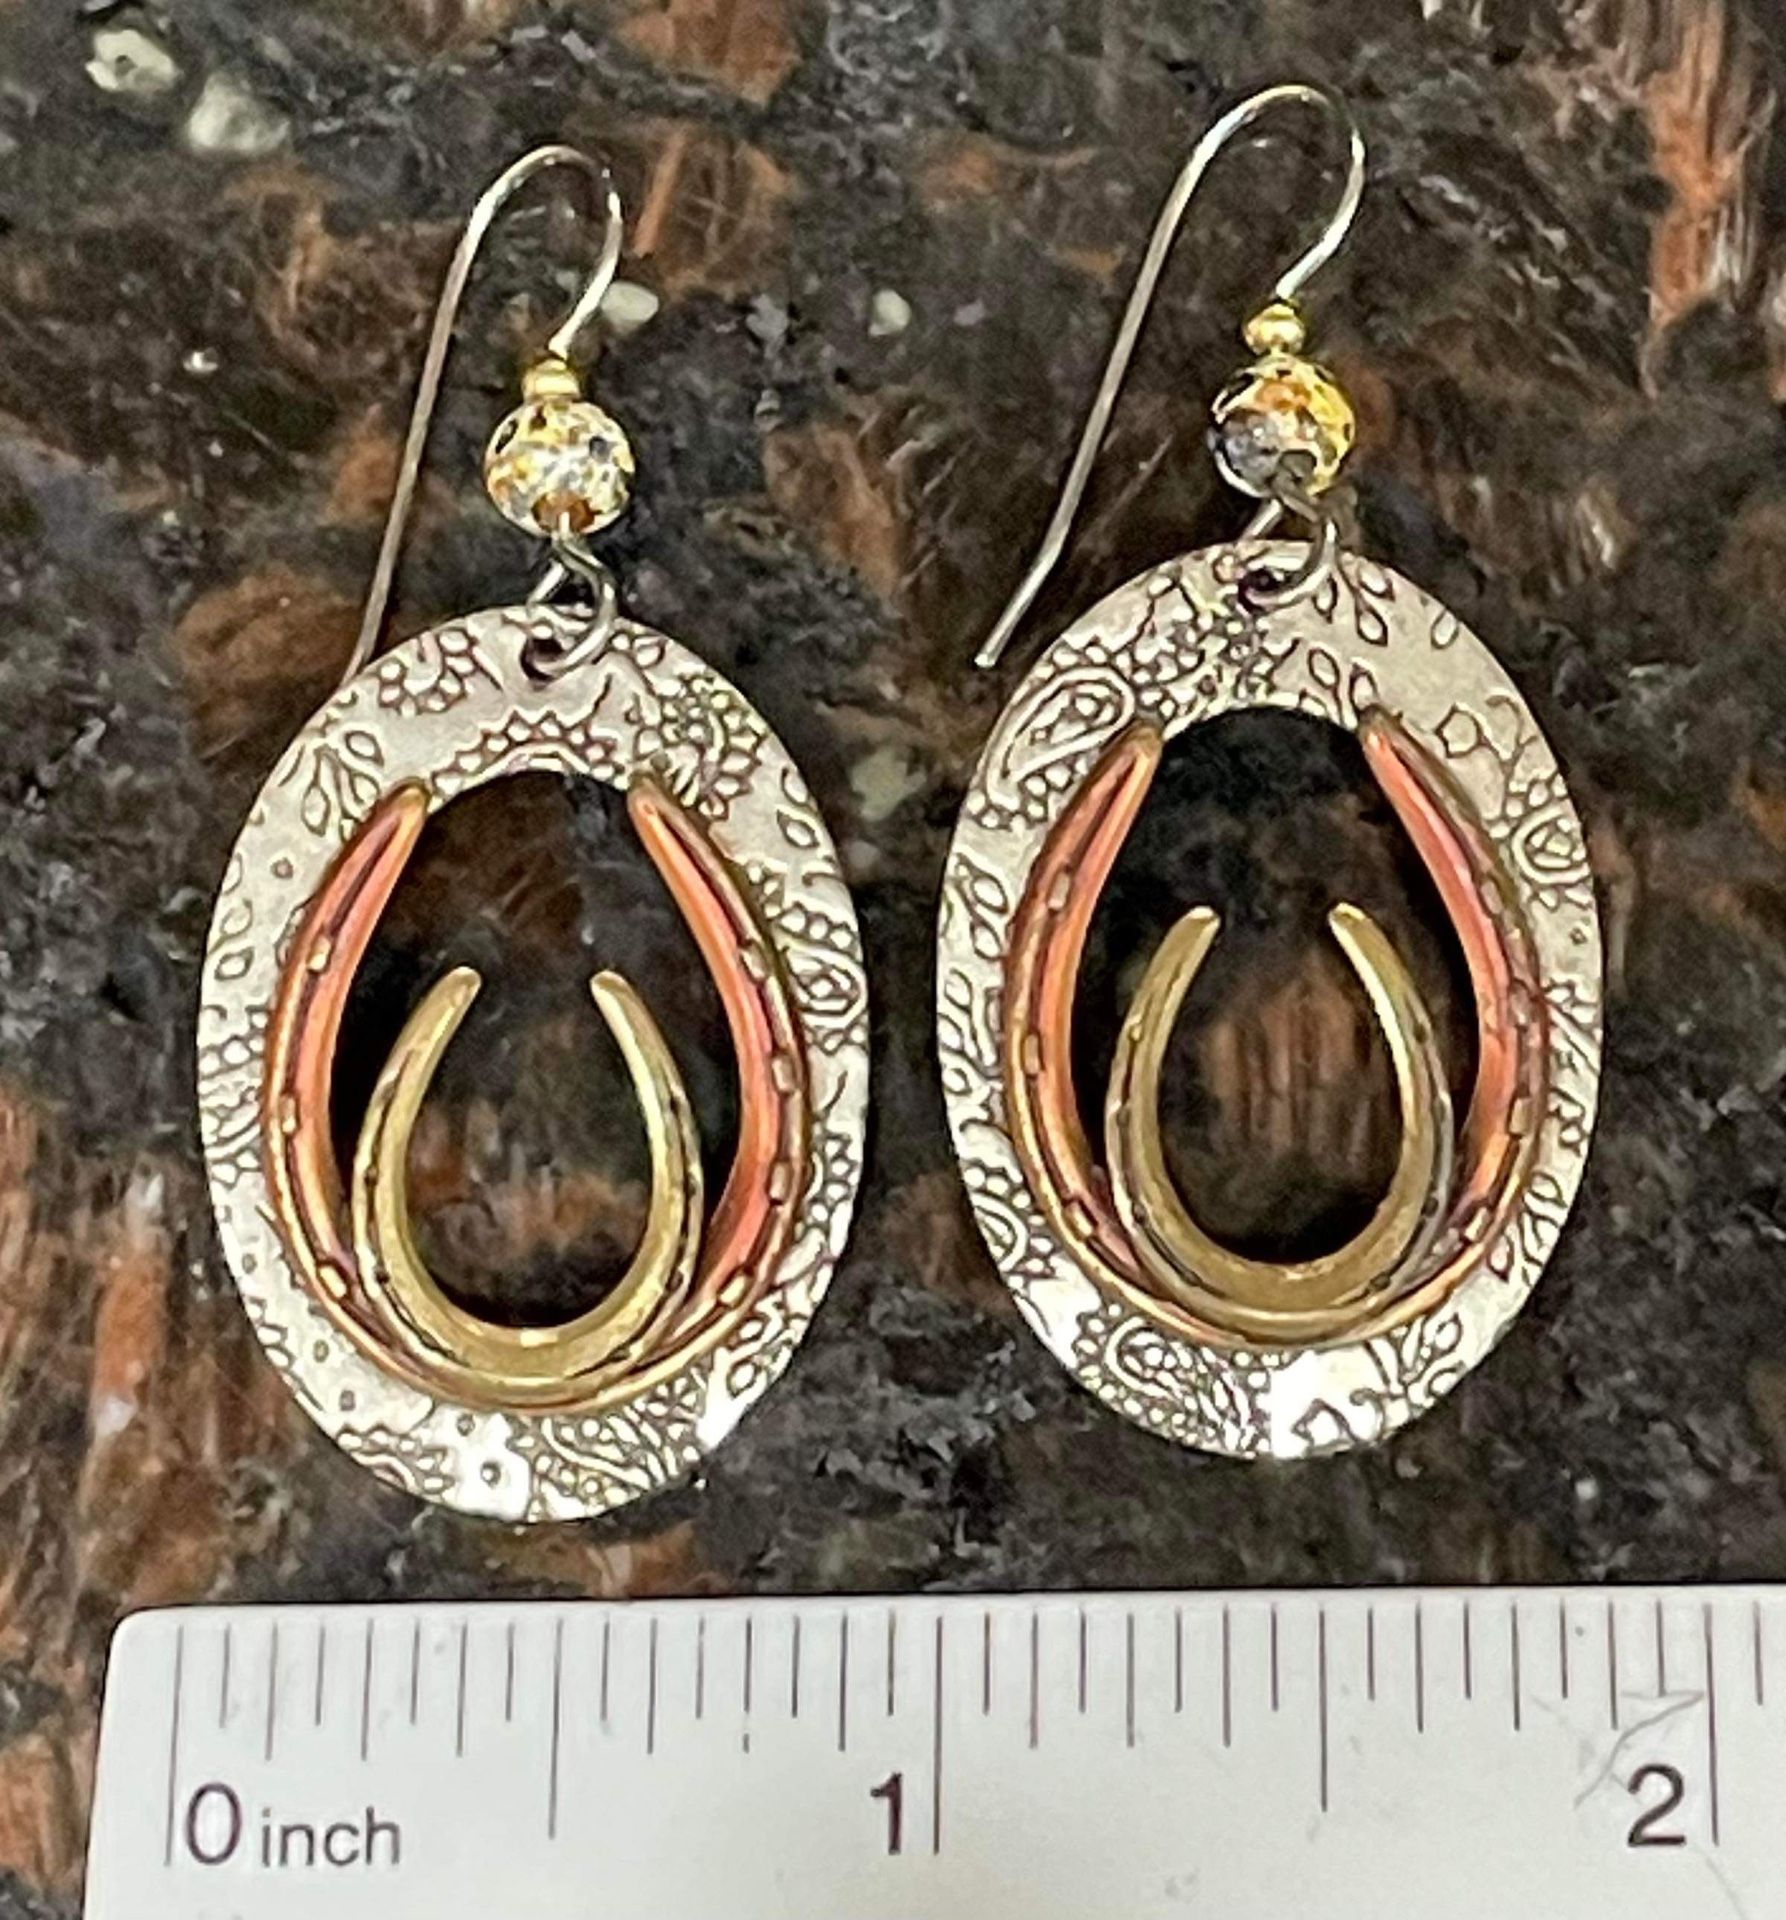 Metal 3 tone horseshoe drop earrings - used - $25.00 Coral Springs 33071